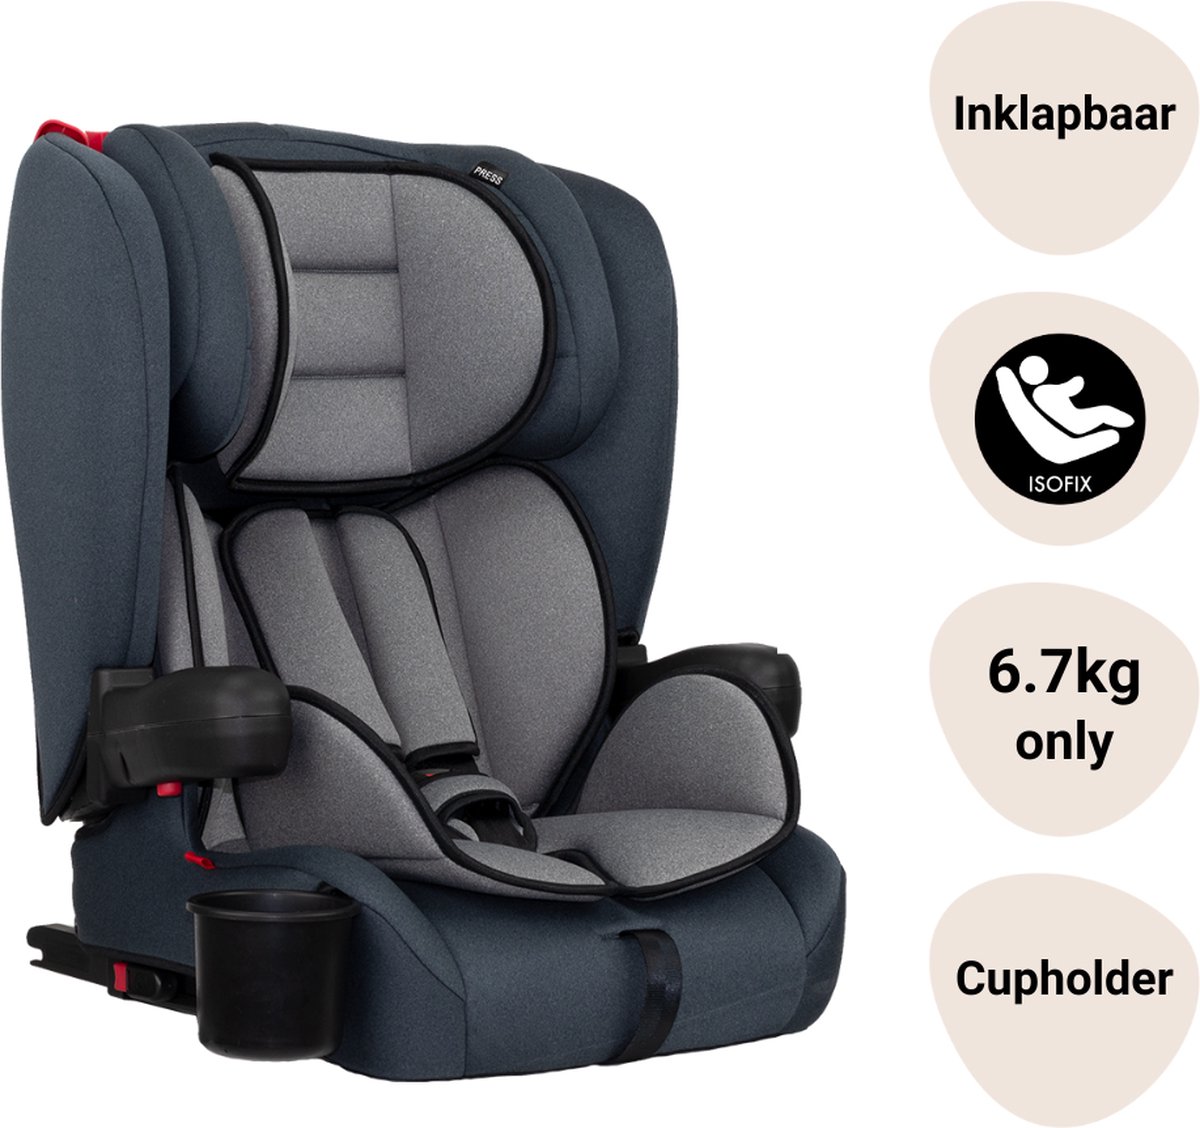 Fournisseurs, fabricants de sièges d'auto pour bébé pliables